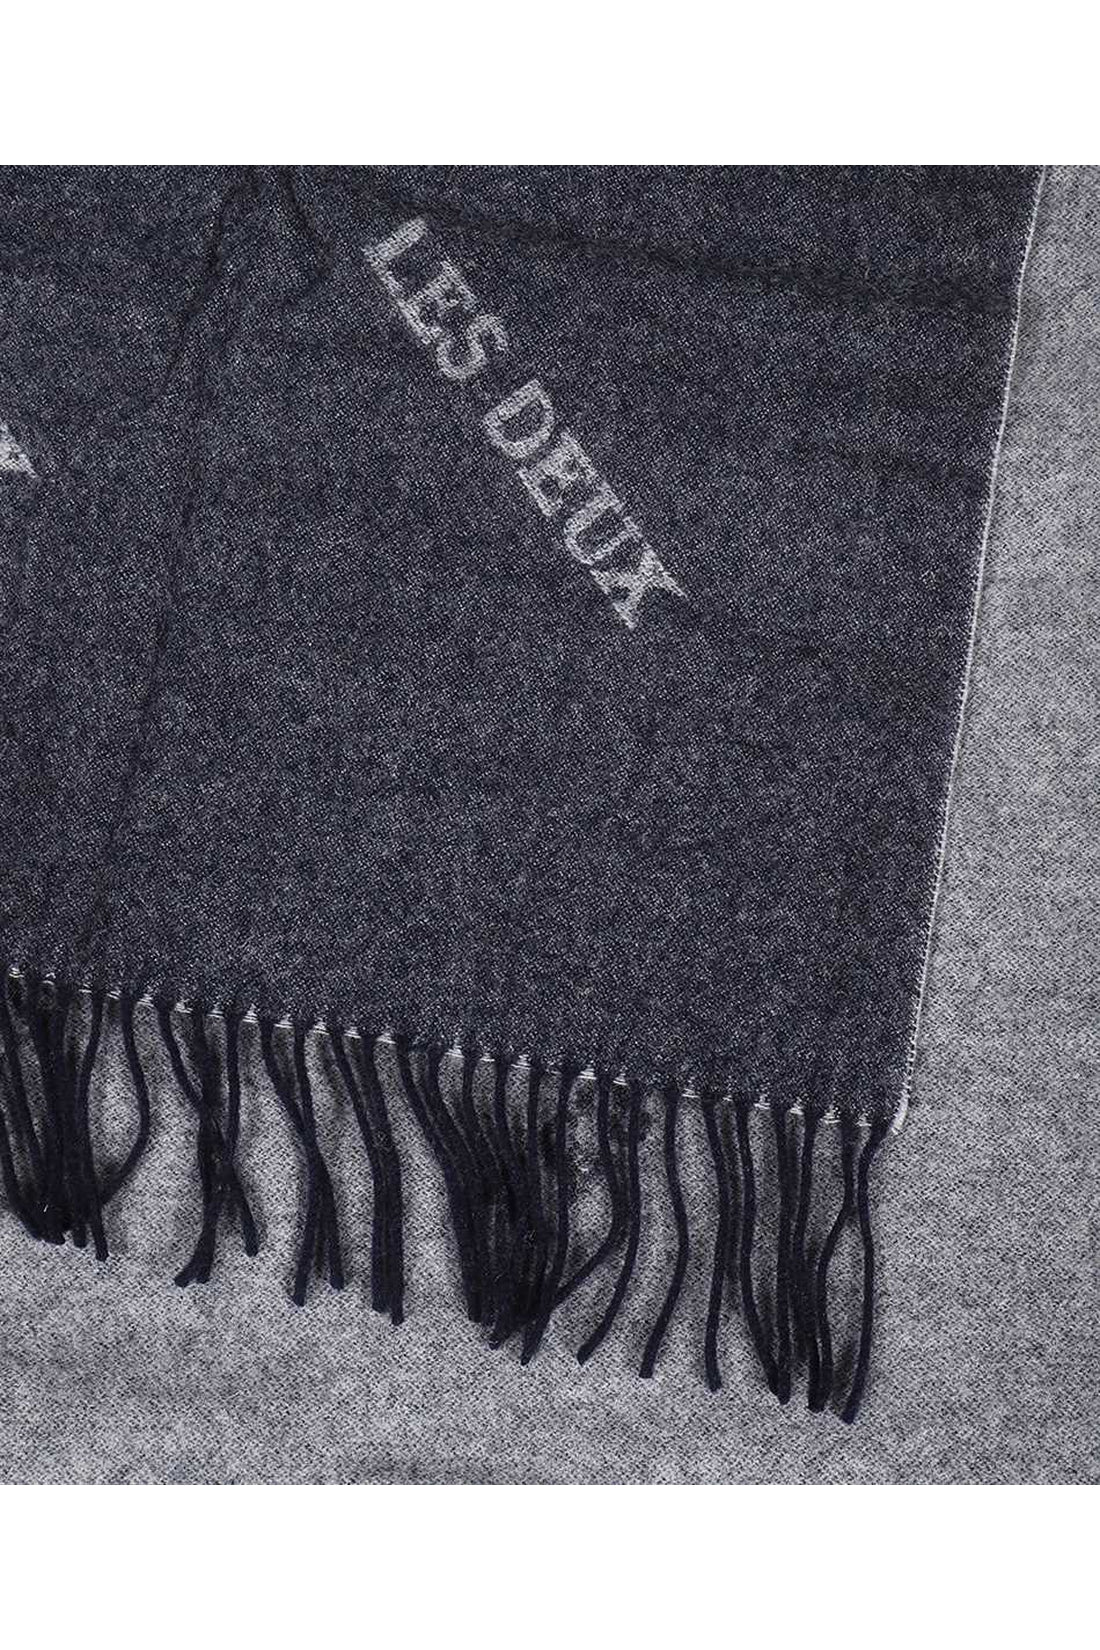 Les Deux-OUTLET-SALE-Wool scarf-ARCHIVIST